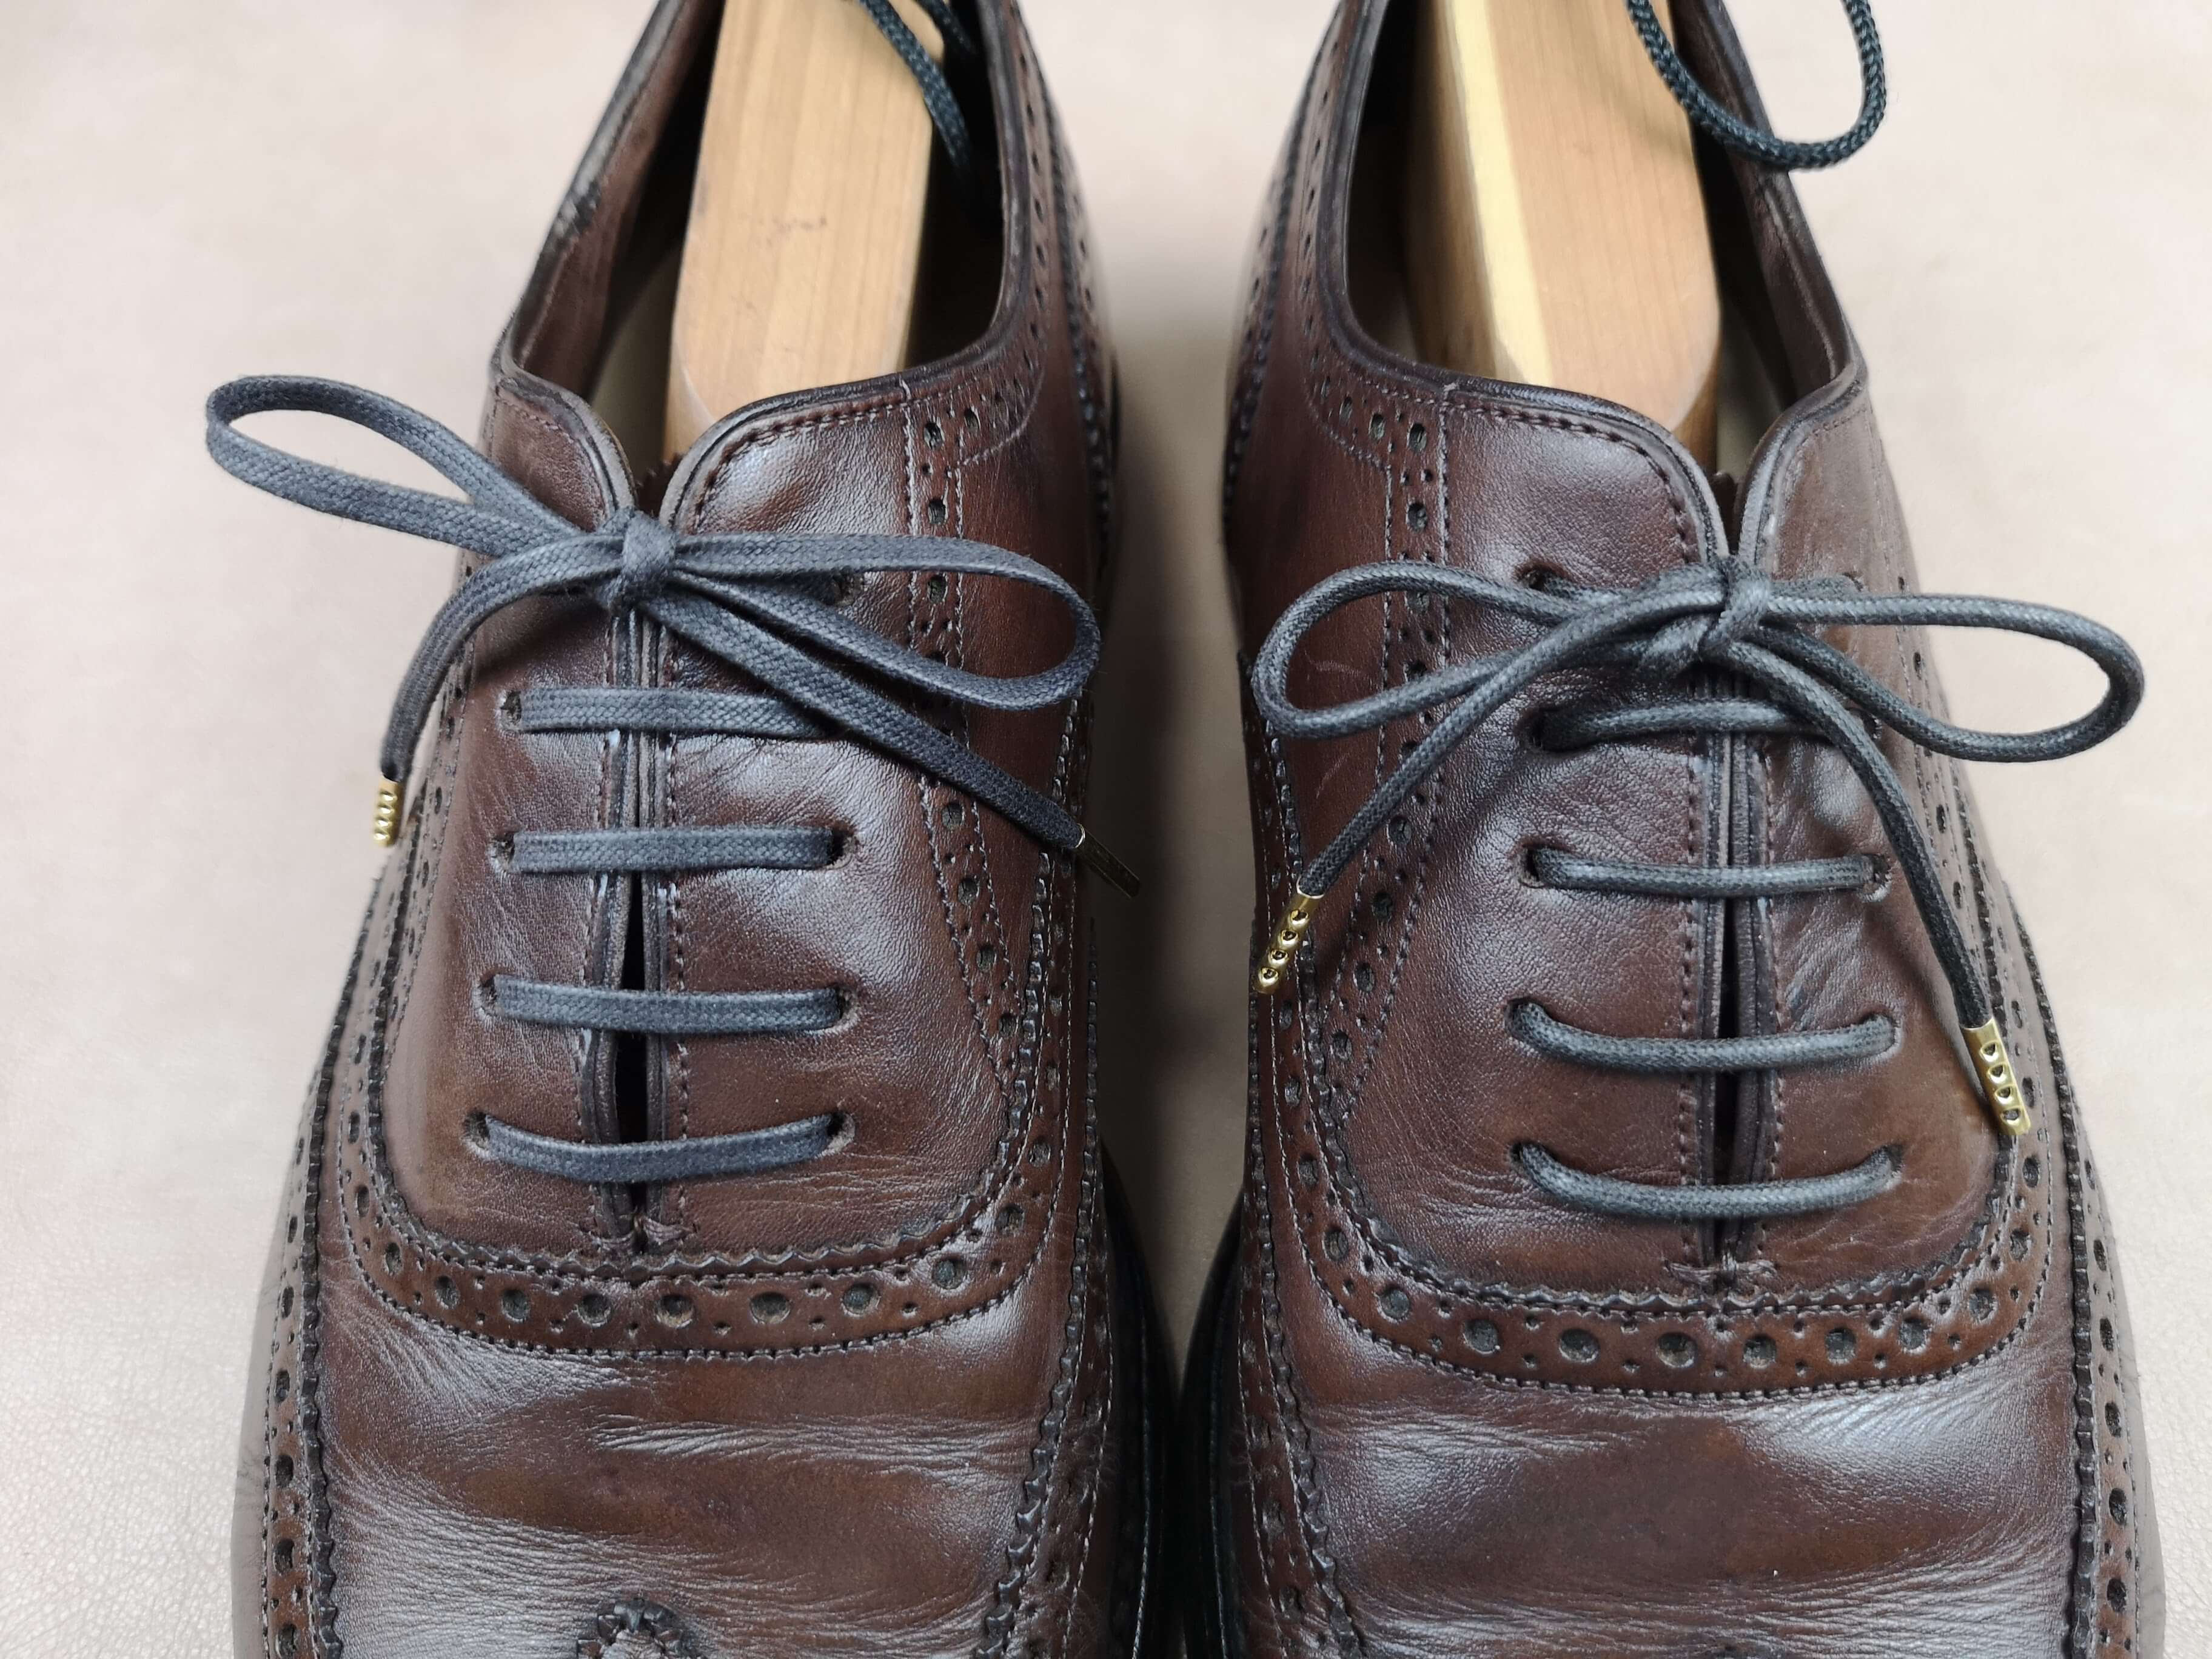 革靴の紐・シューレースのおすすめ【蝋引き靴紐、高級オーダーシューレースなど】 | KutsuMedia（クツメディア）-革靴と靴磨きのブログメディア